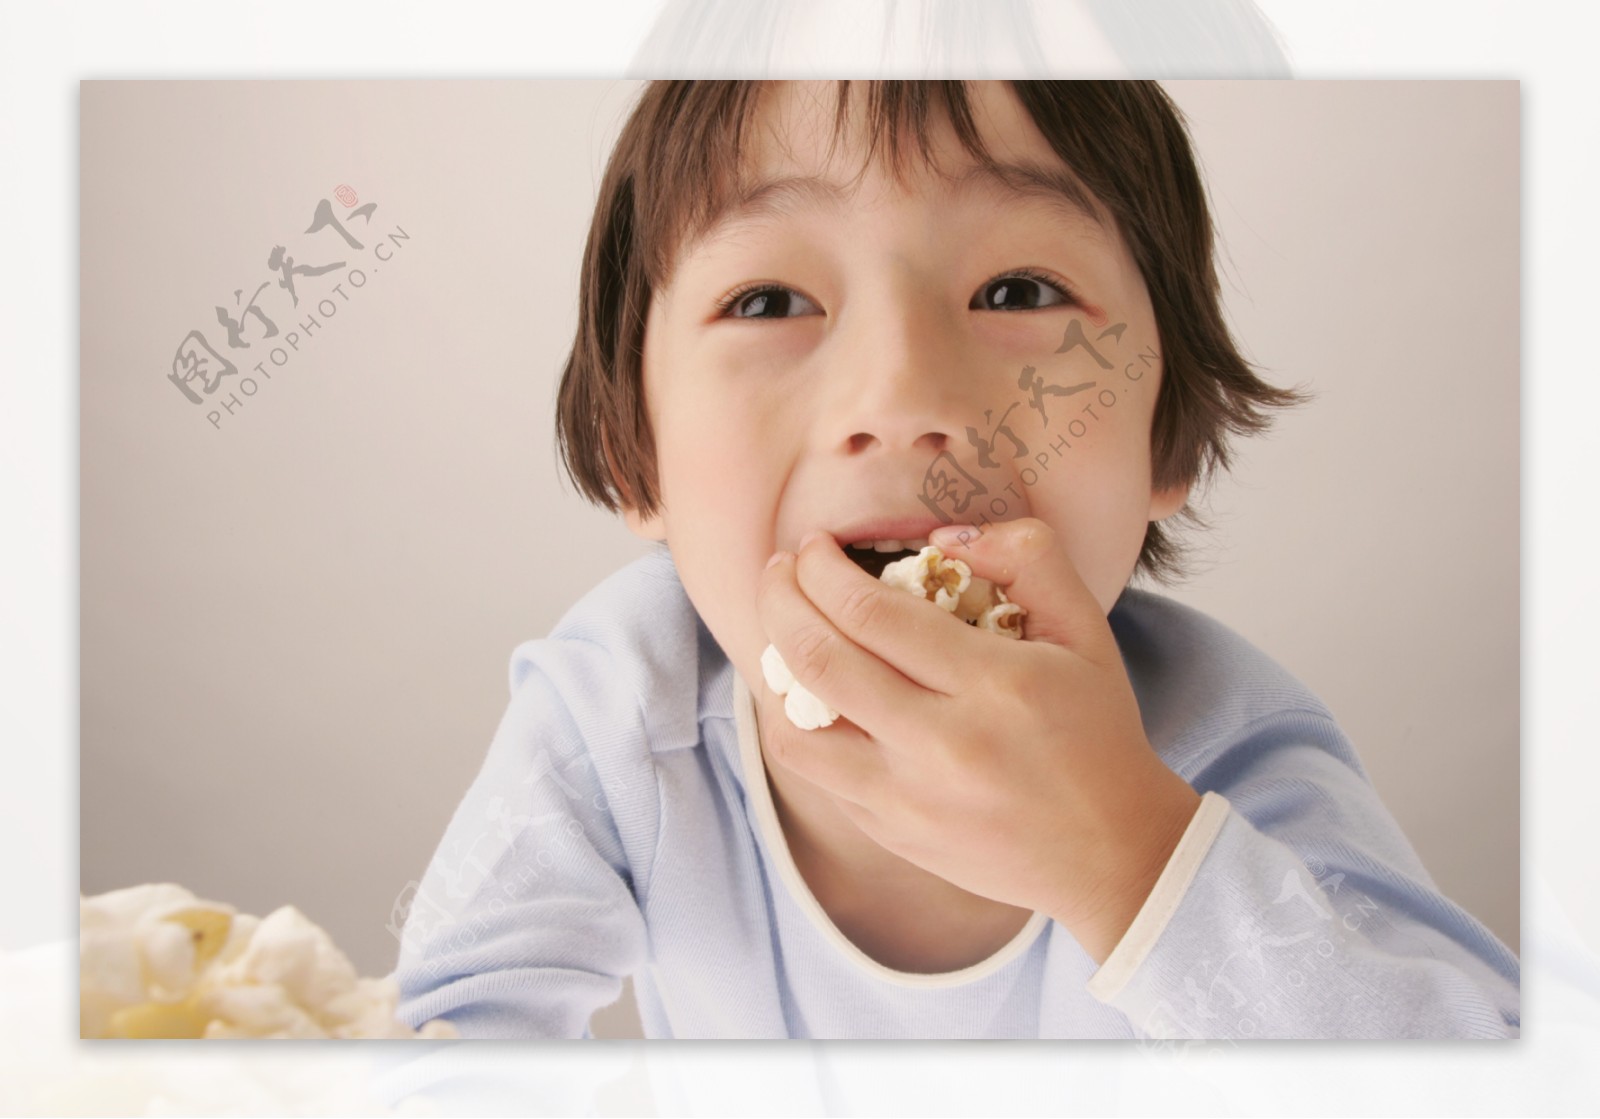 吃爆米花的男孩图片